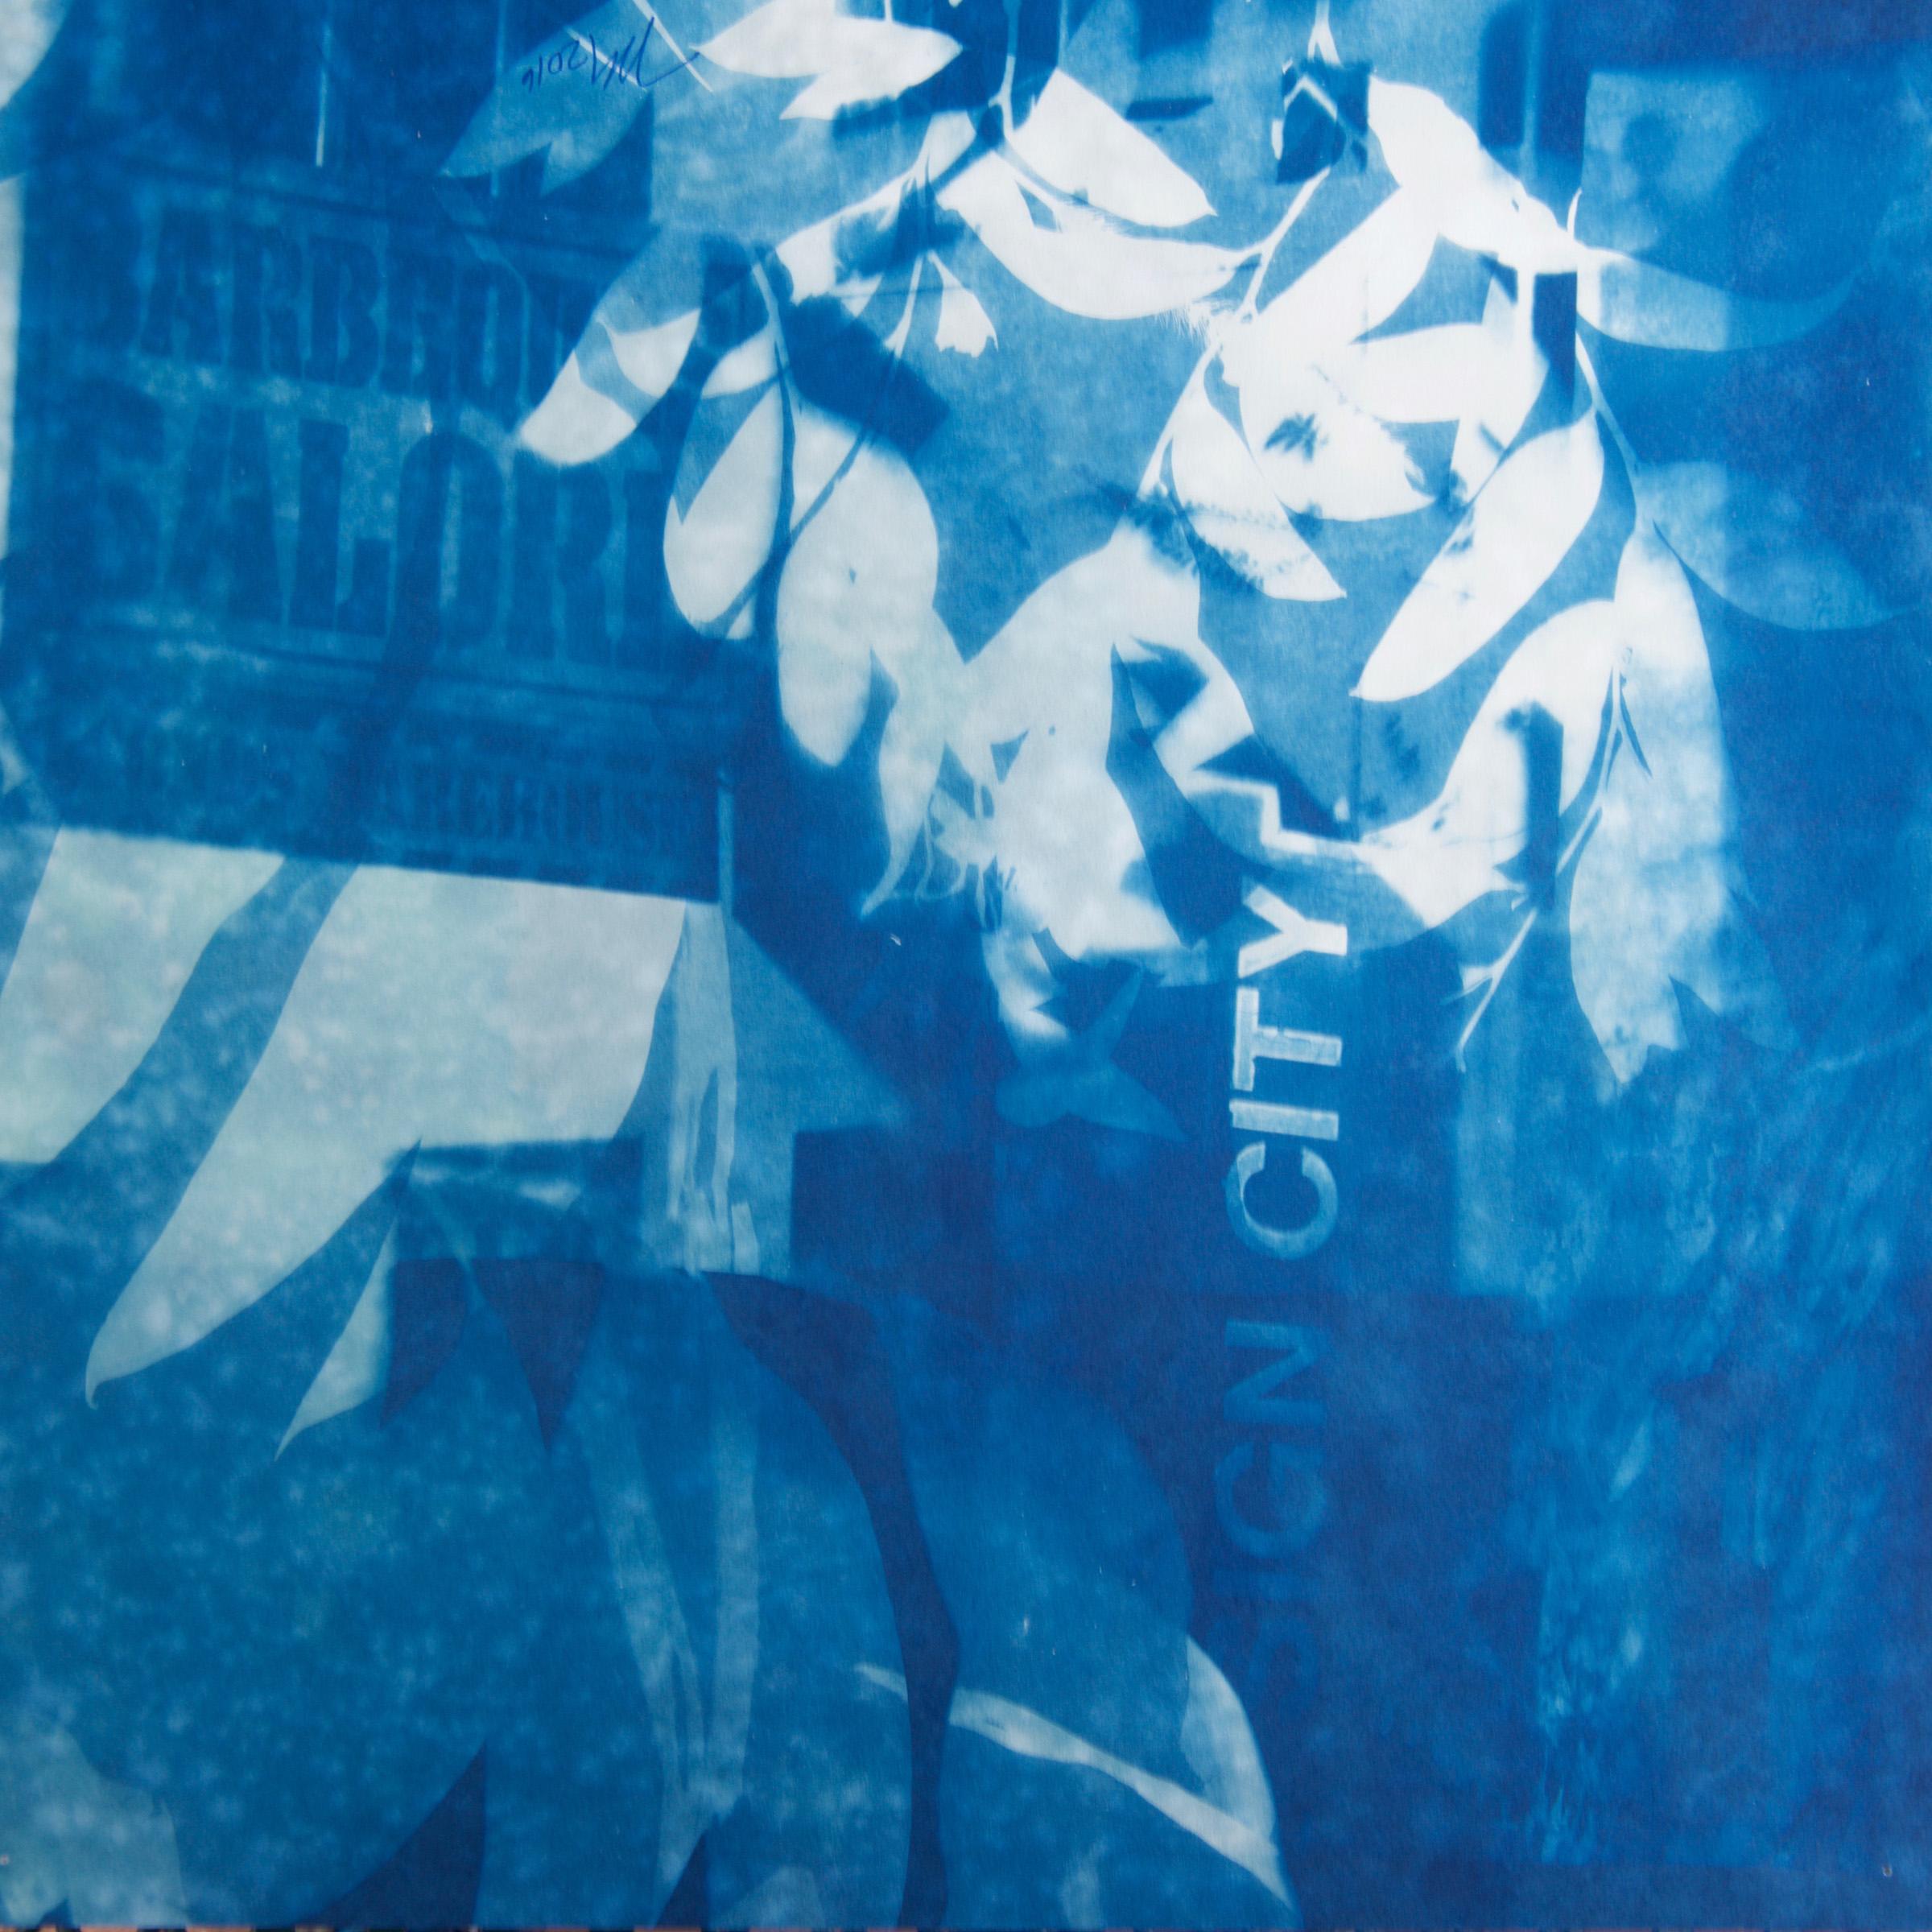 "Sign City Galore", zeitgenössisch, Blätter, Gebäude, blau, Cyanotypie, Fotografie